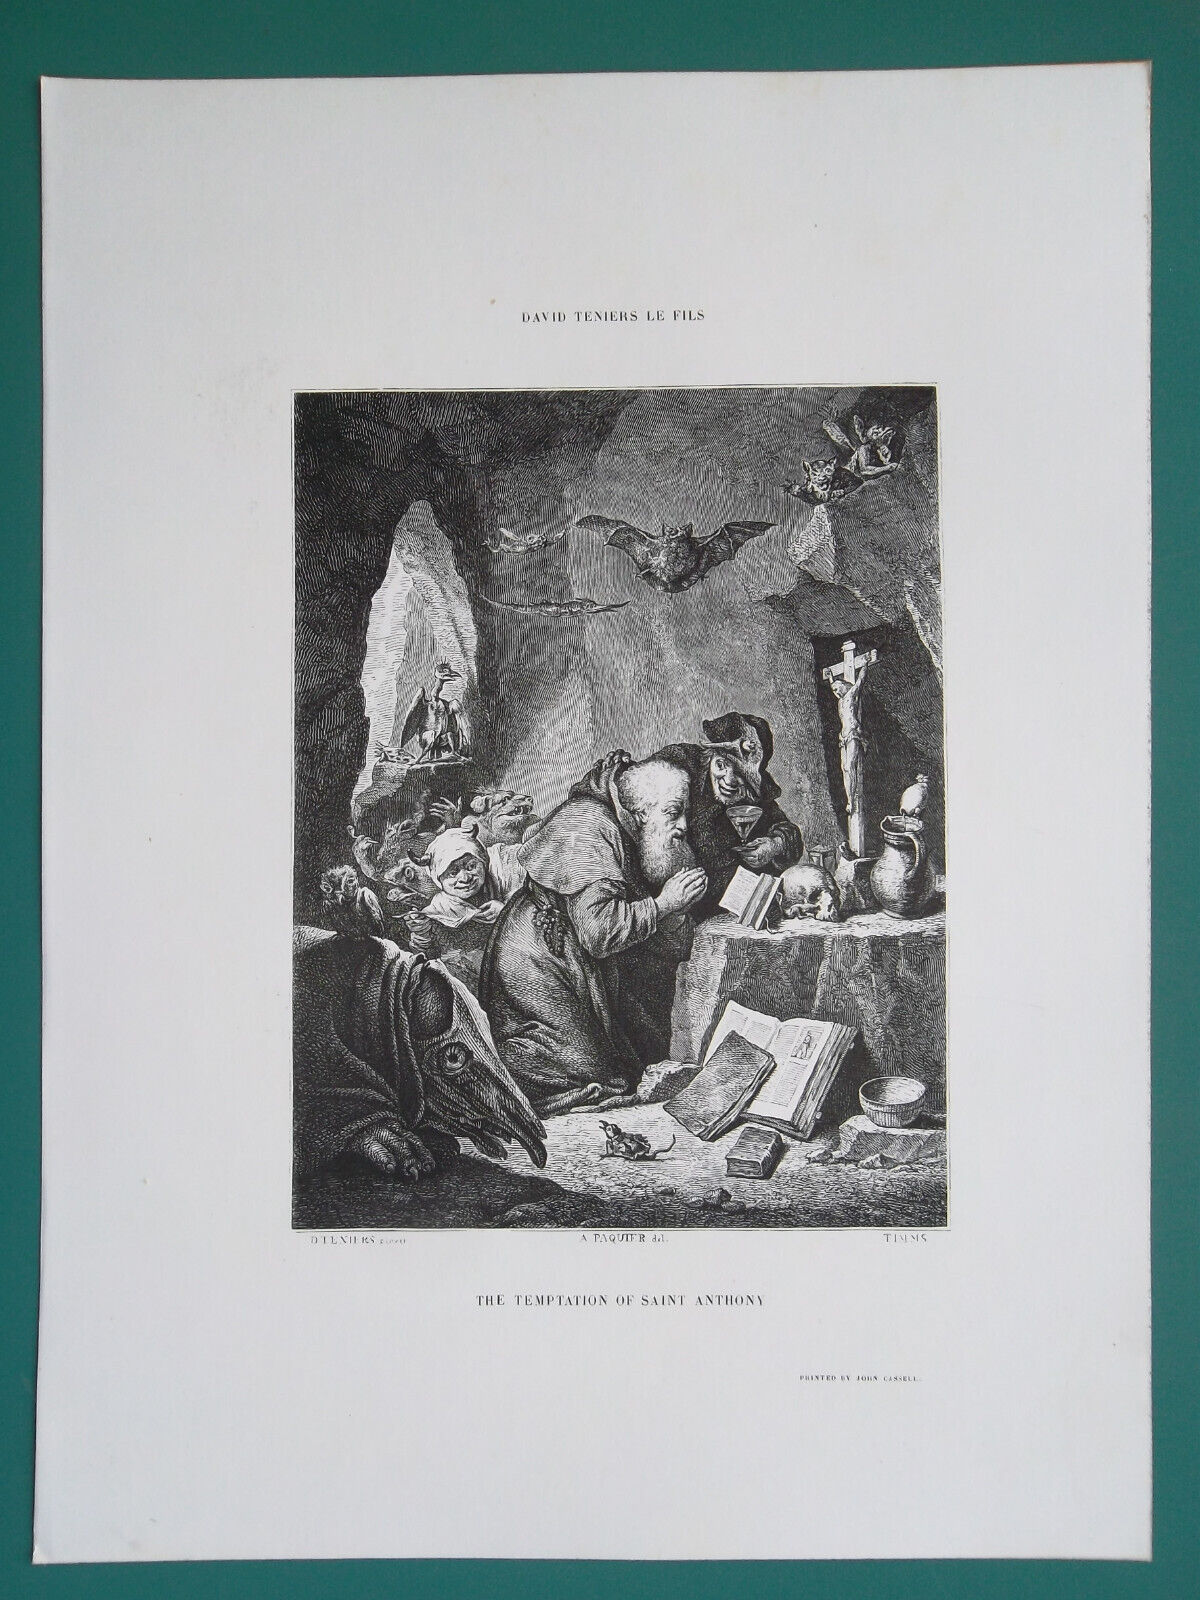 DAVID TENIERS Works Incantation Jealous Wife St Anthony - 3x 1857 Prints